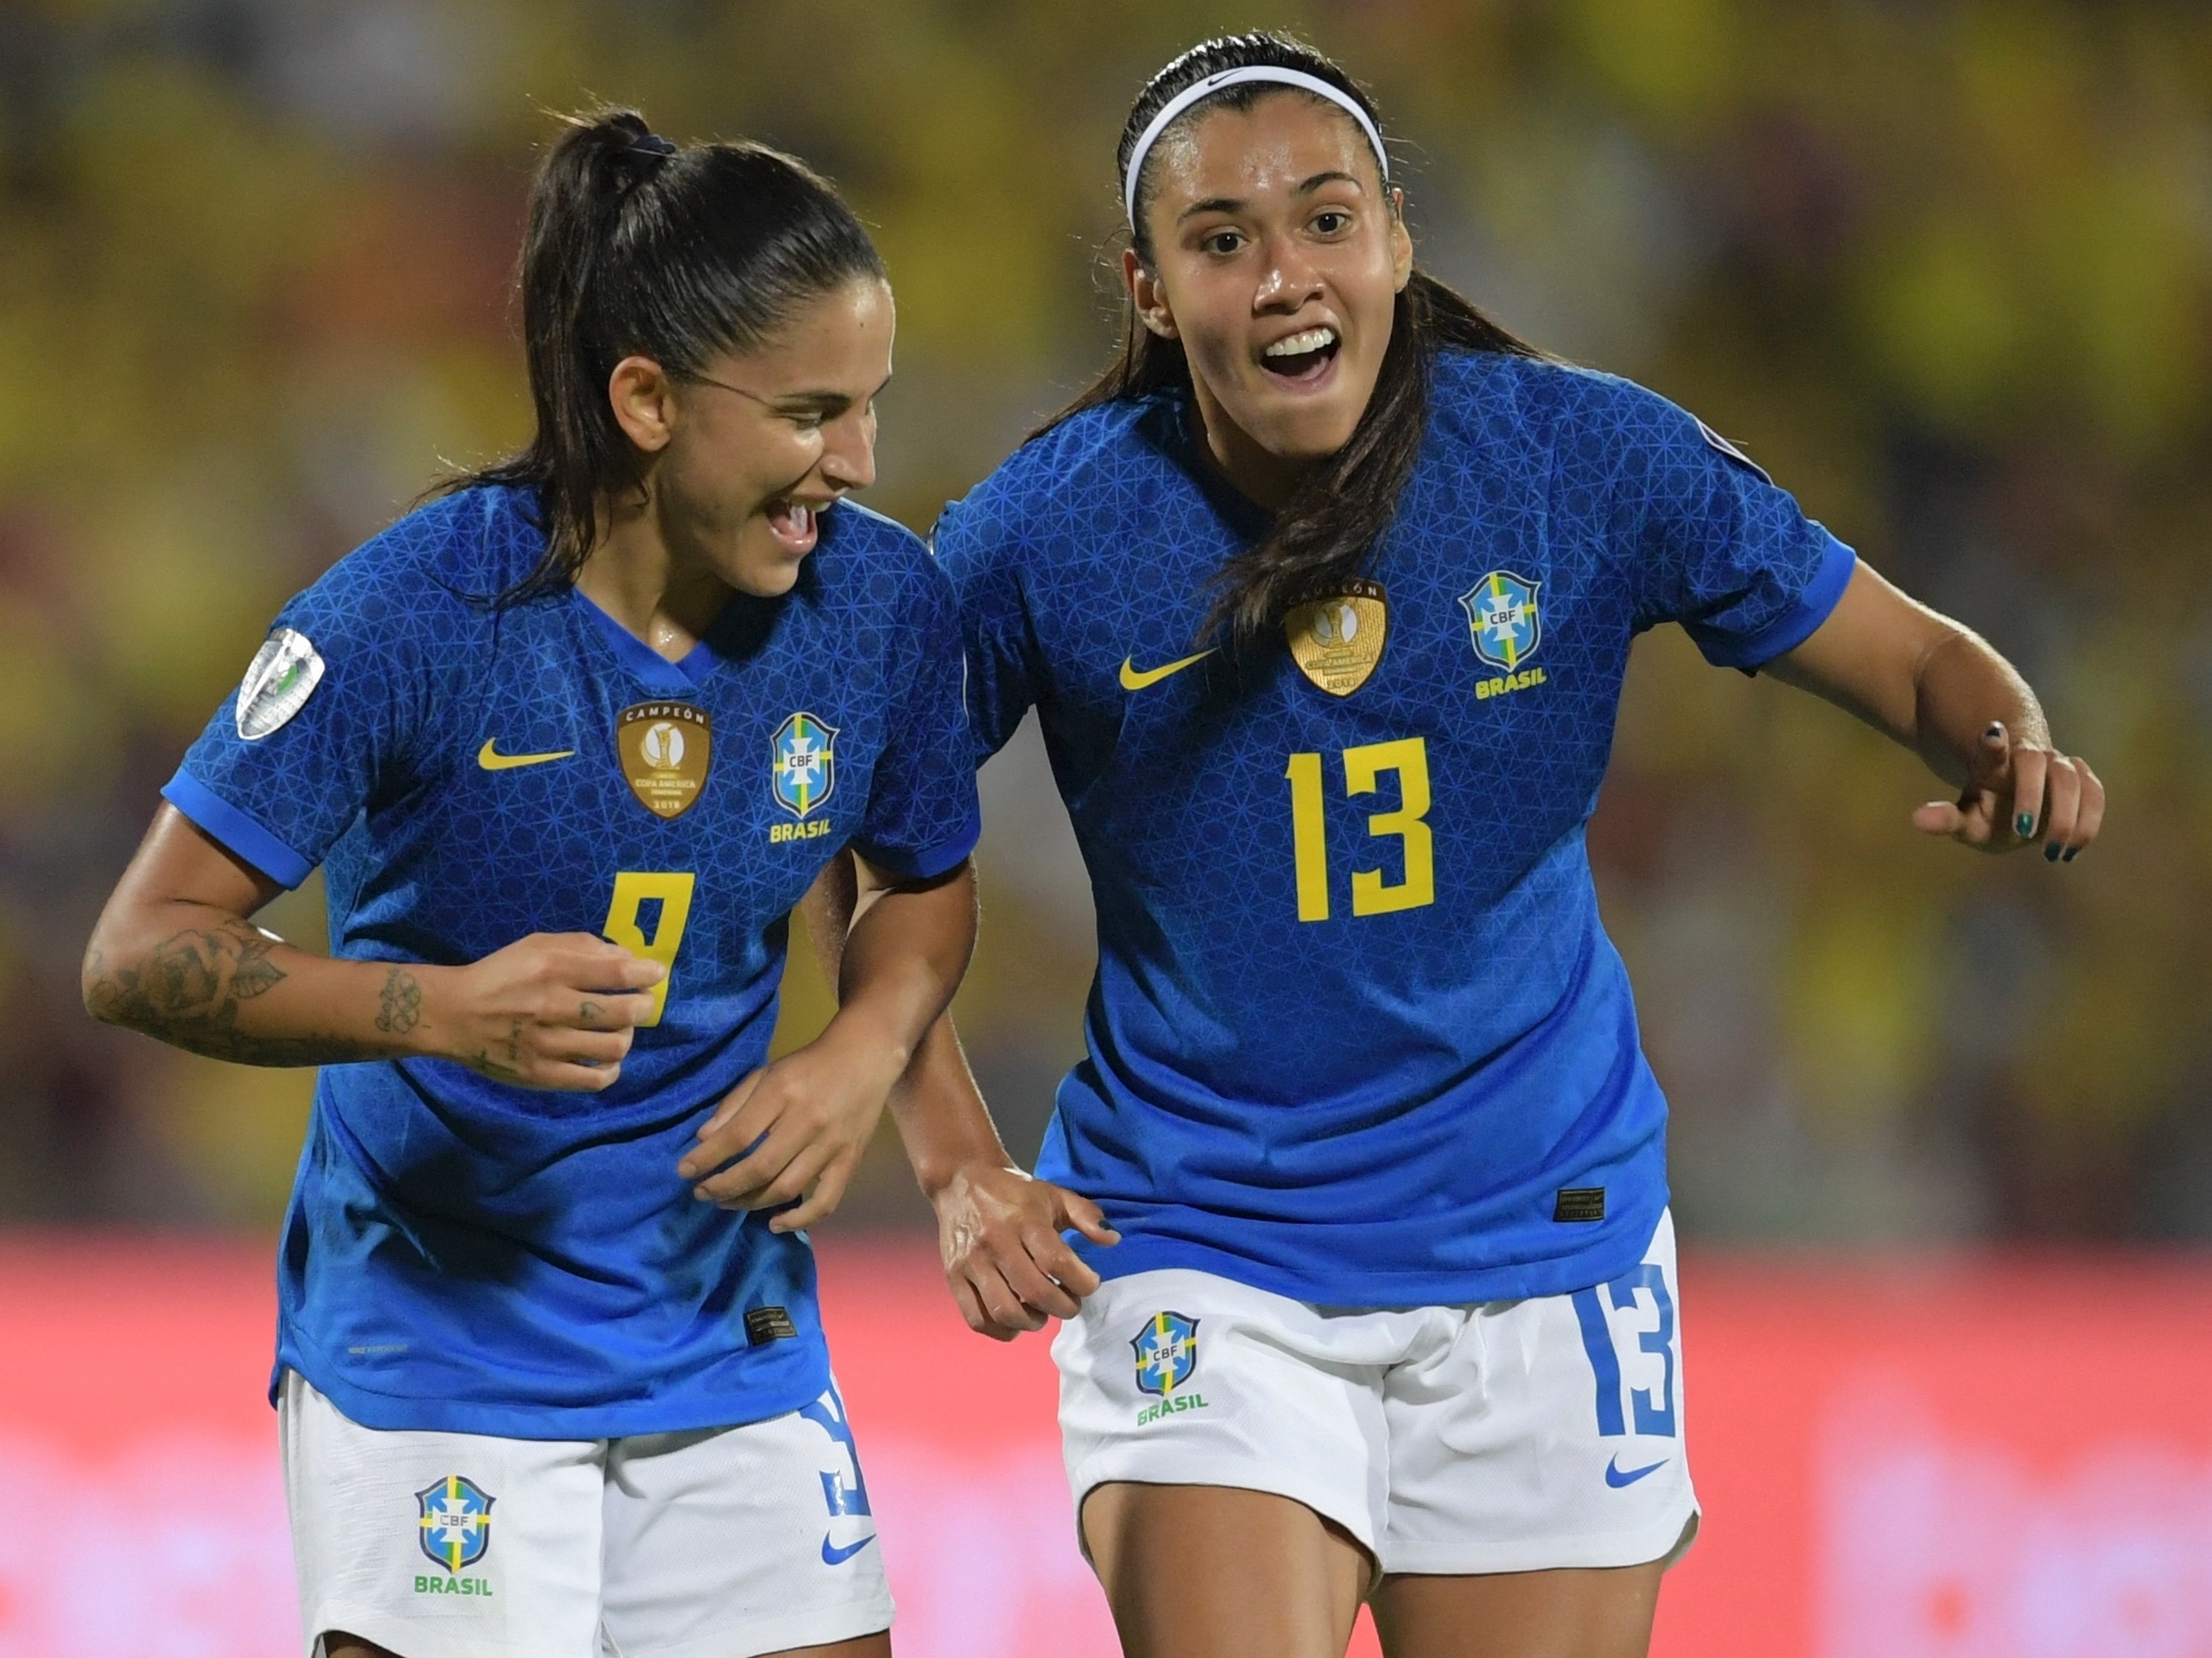 O Brasil já ganhou a Copa do Mundo Feminina? Confira as maiores